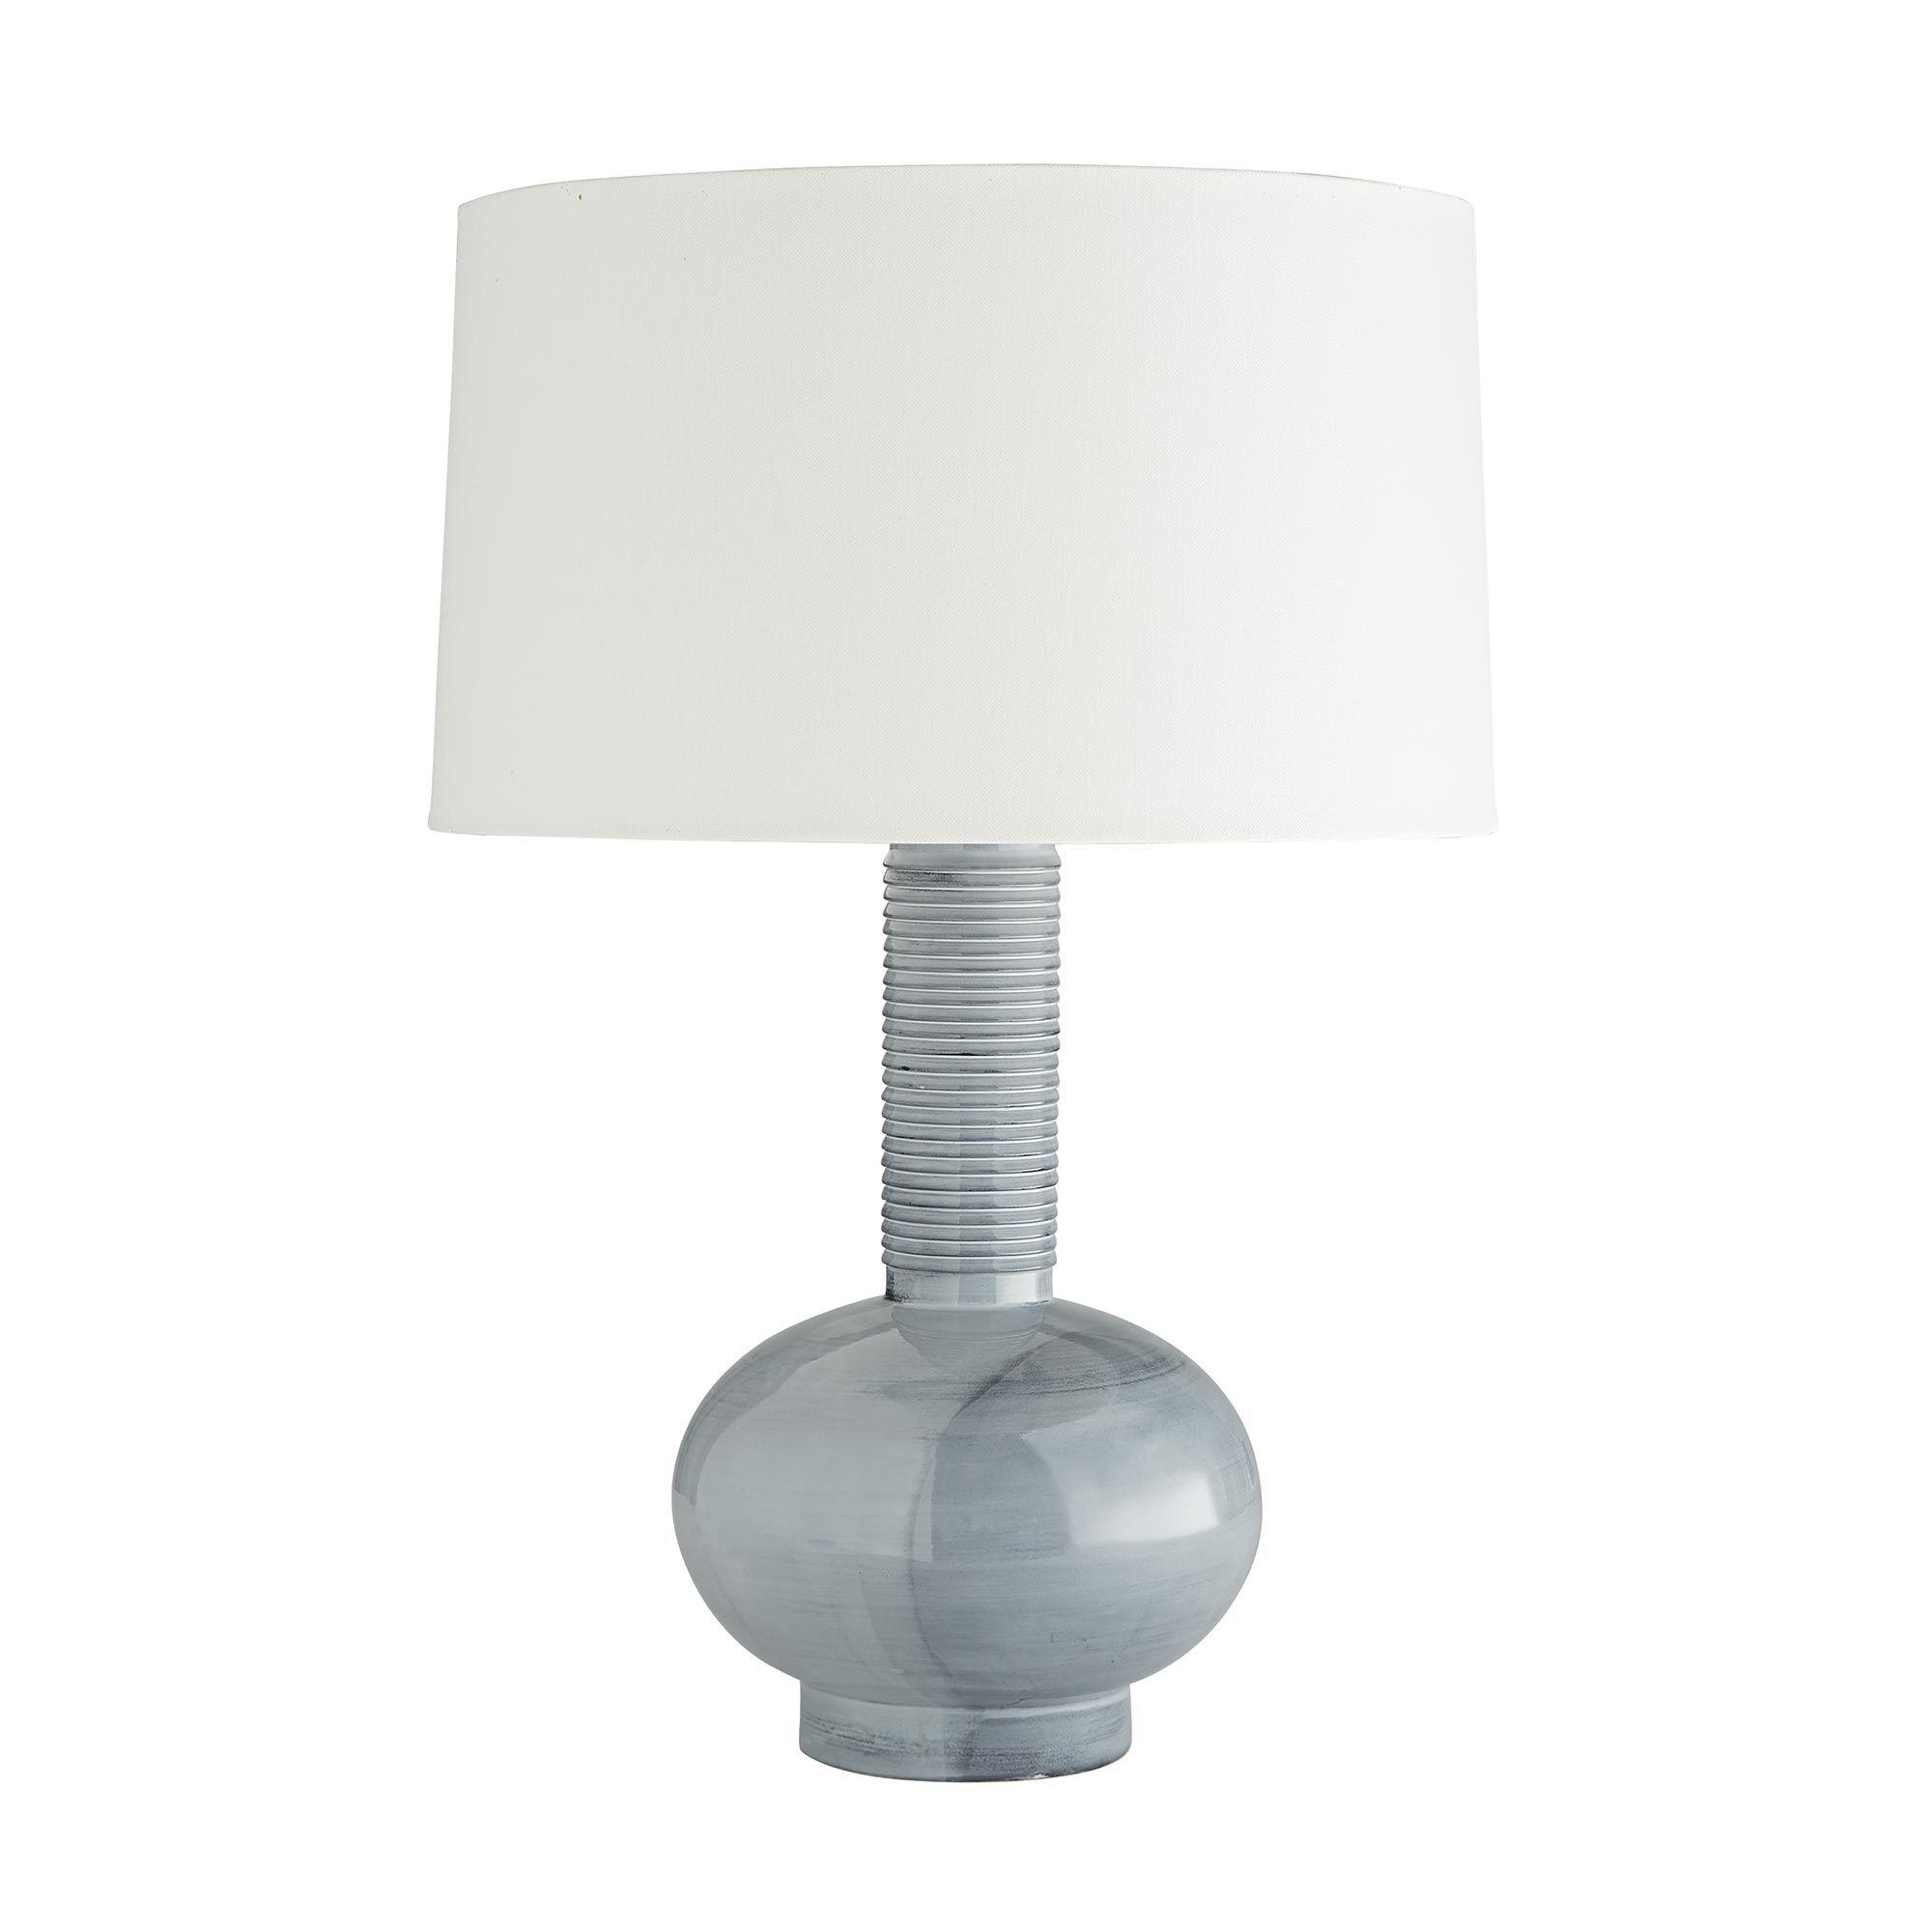 Купить Настольная лампа Nakoma Lamp в интернет-магазине roooms.ru